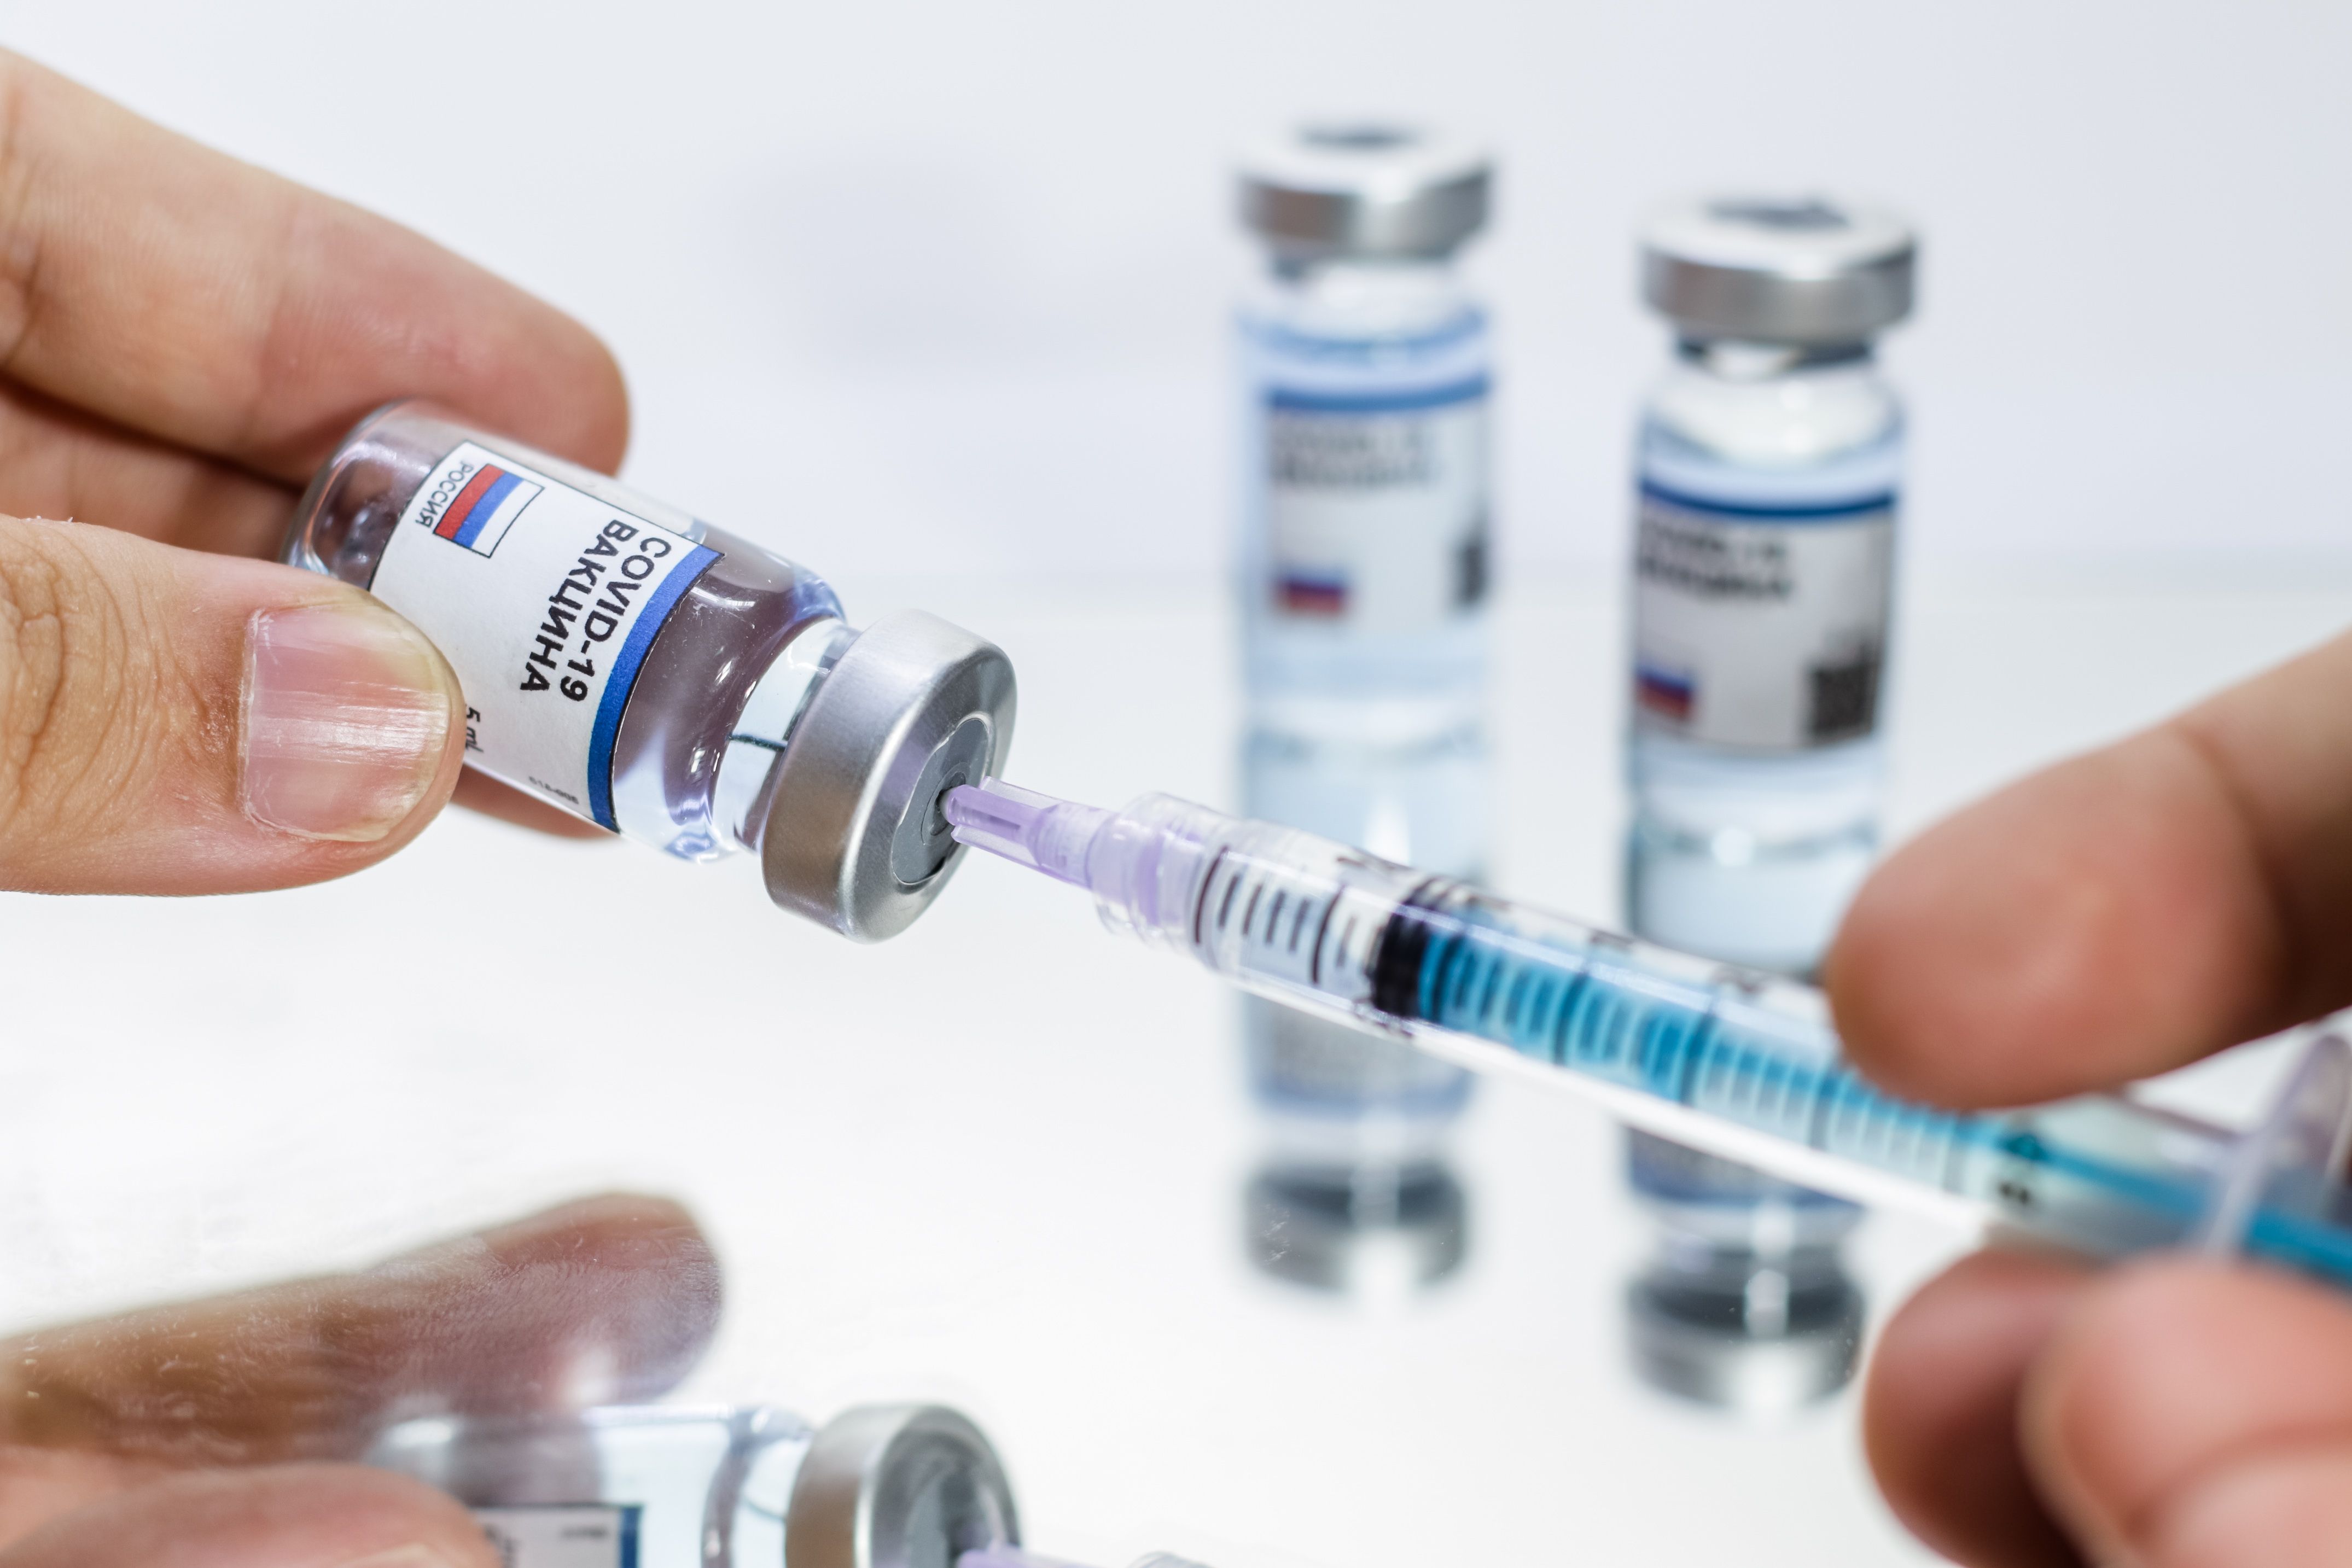 Результаты испытания вакцины объявлены «коммерческой тайной». Что скрывают от народа?